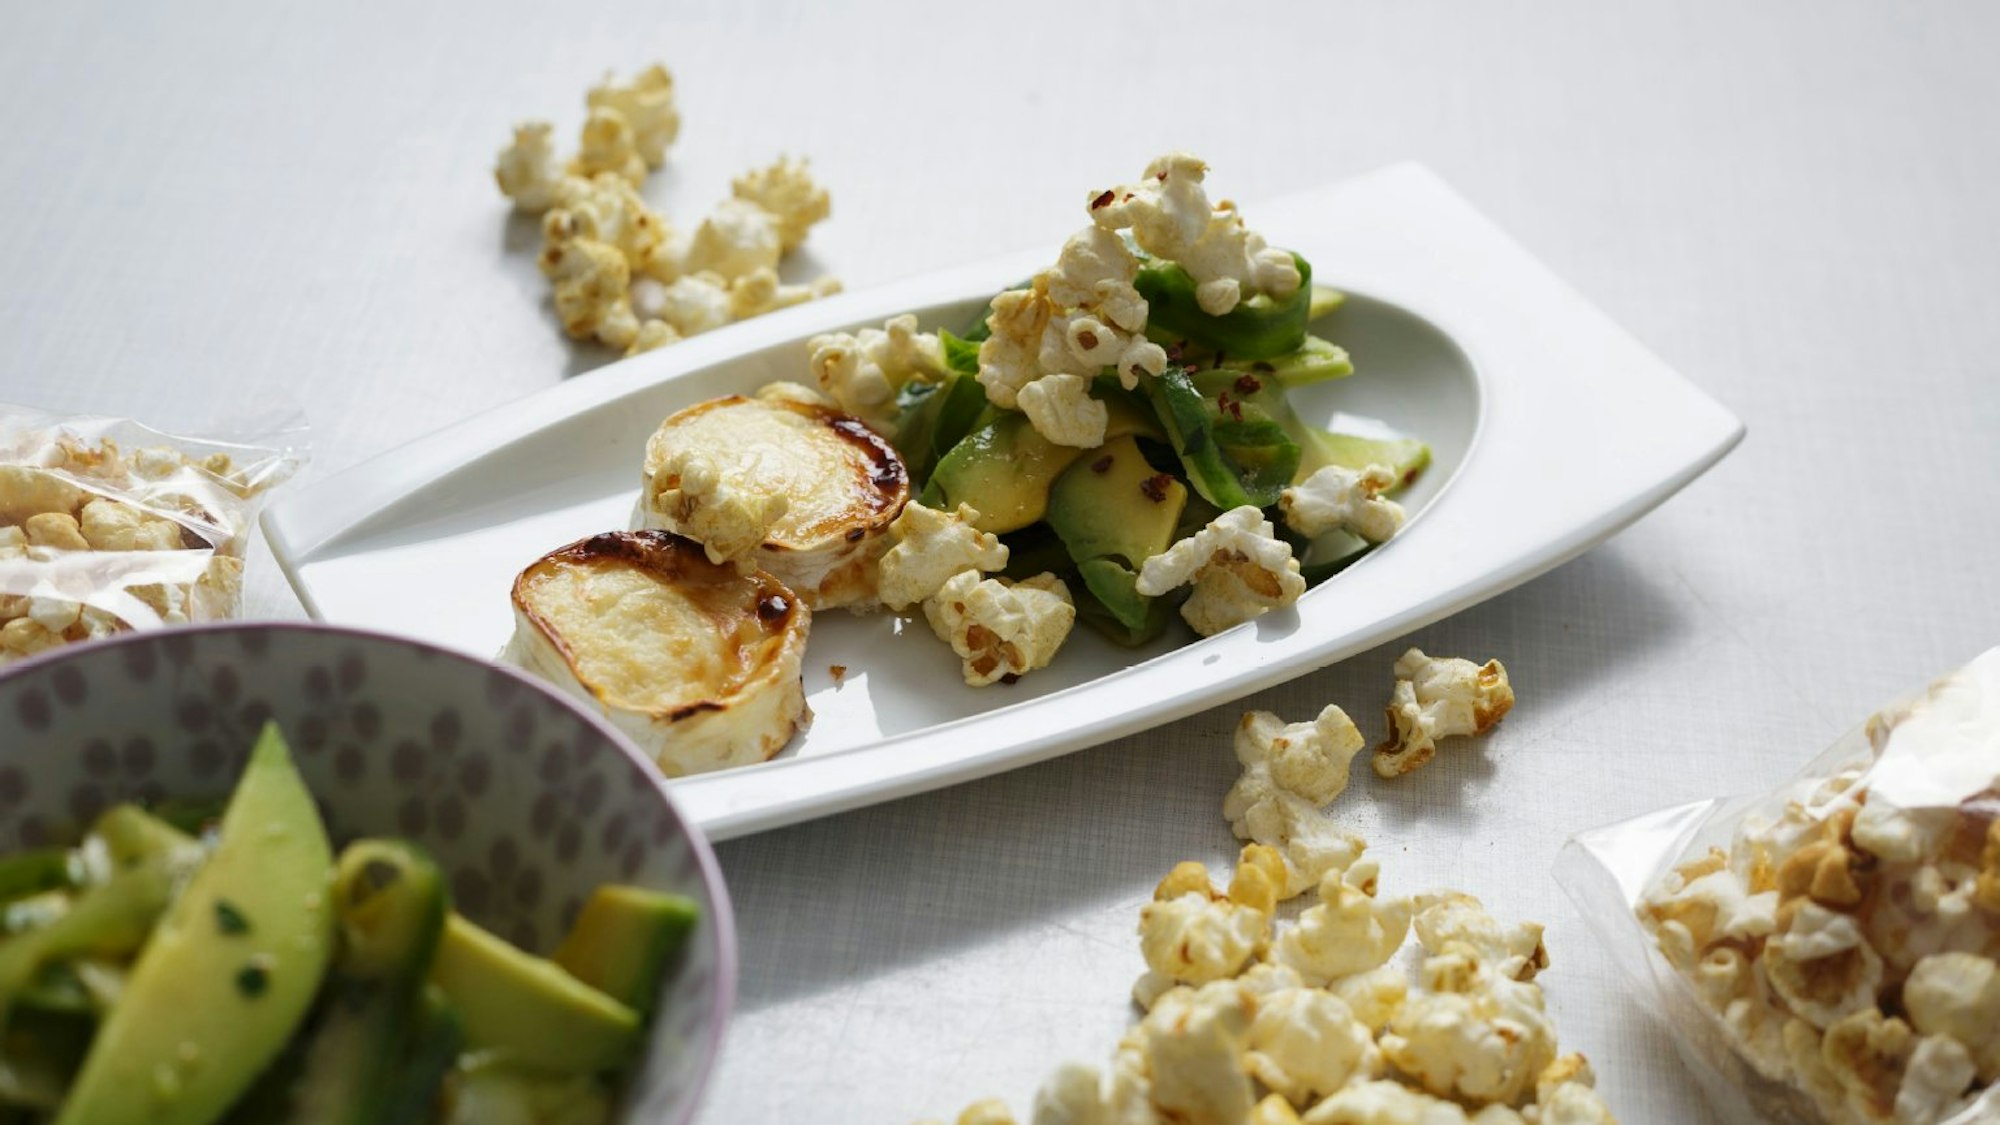 Ziegenkäse und Avocado mit Popcorn-Topping auf einem Teller angerichtet